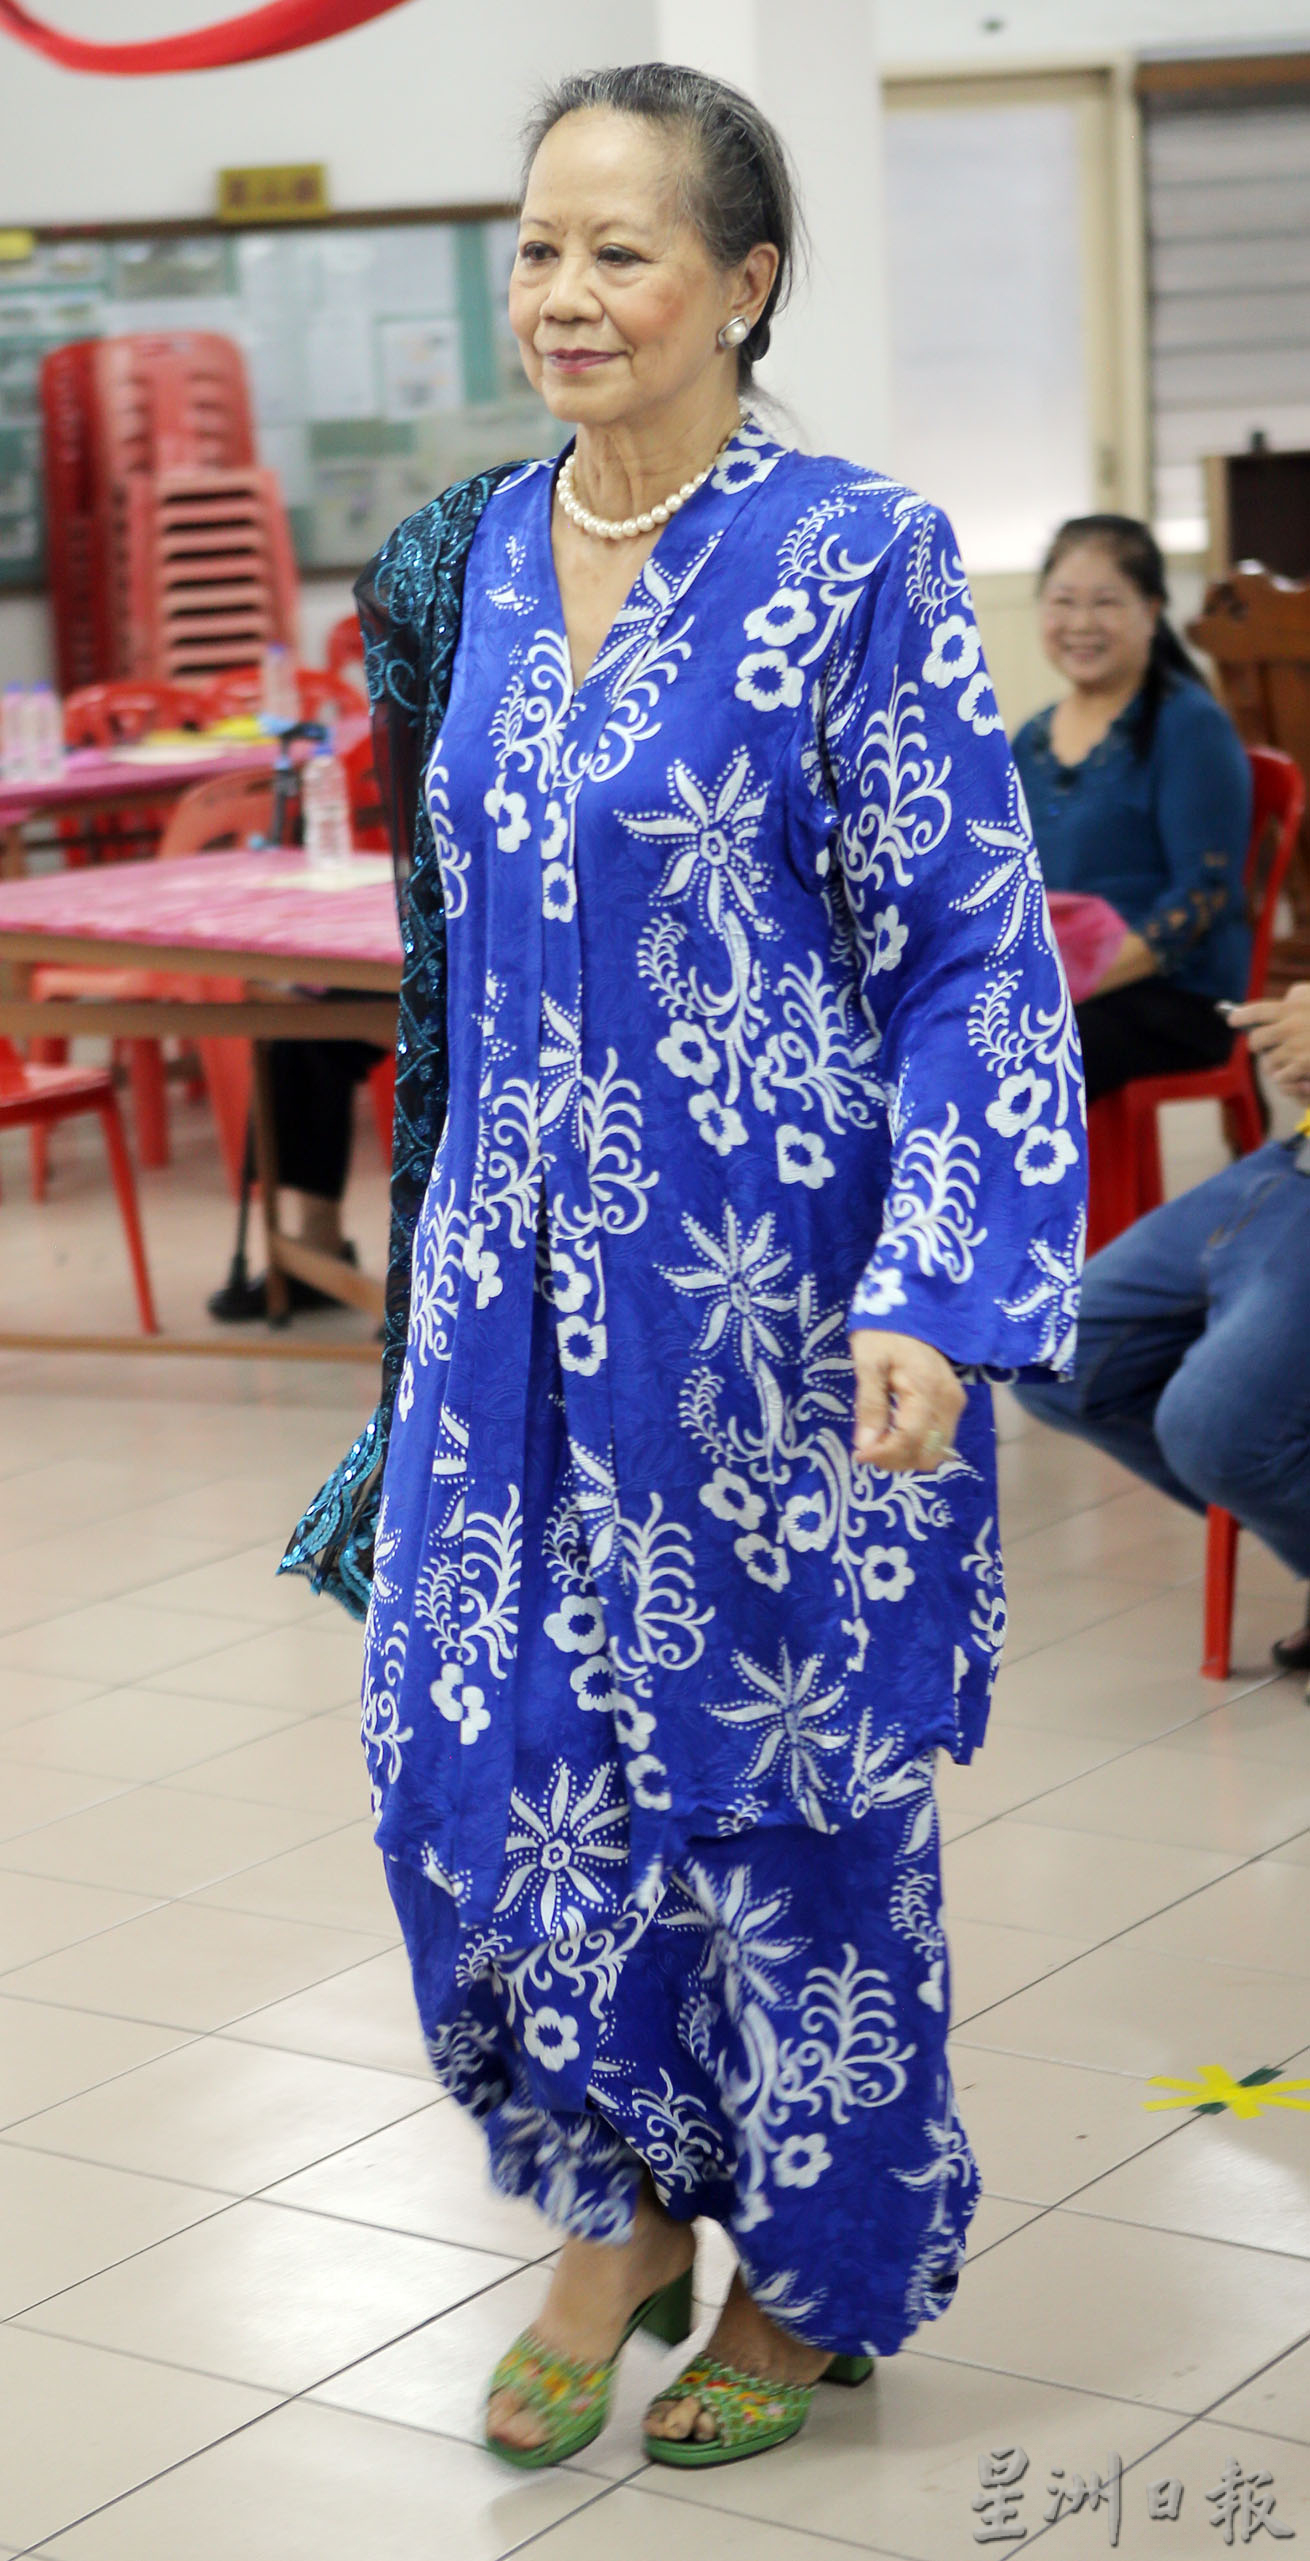 霹广东会馆庆三八妇女节  三大民族传统服装秀